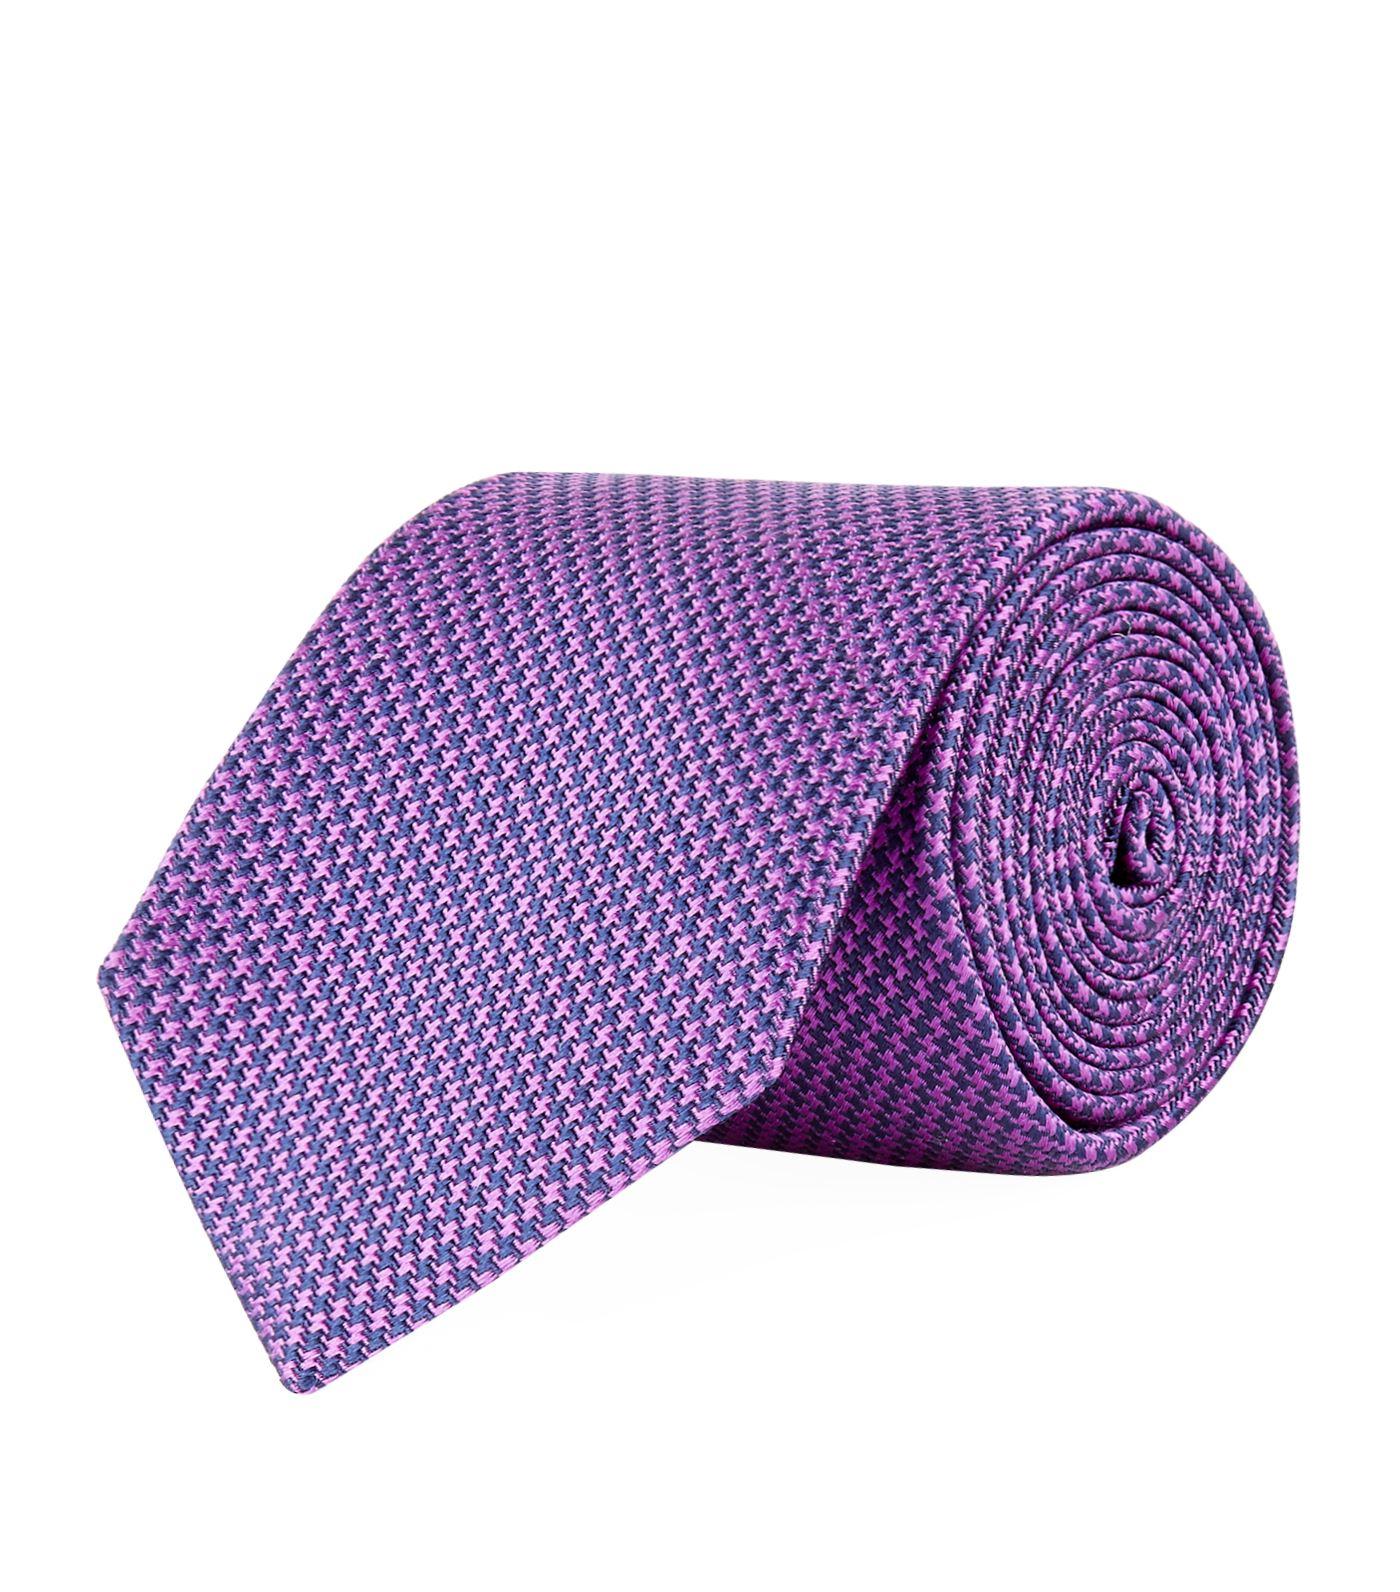 Turnbull & Asser Puppy Tooth Silk Tie, Purple | ModeSens